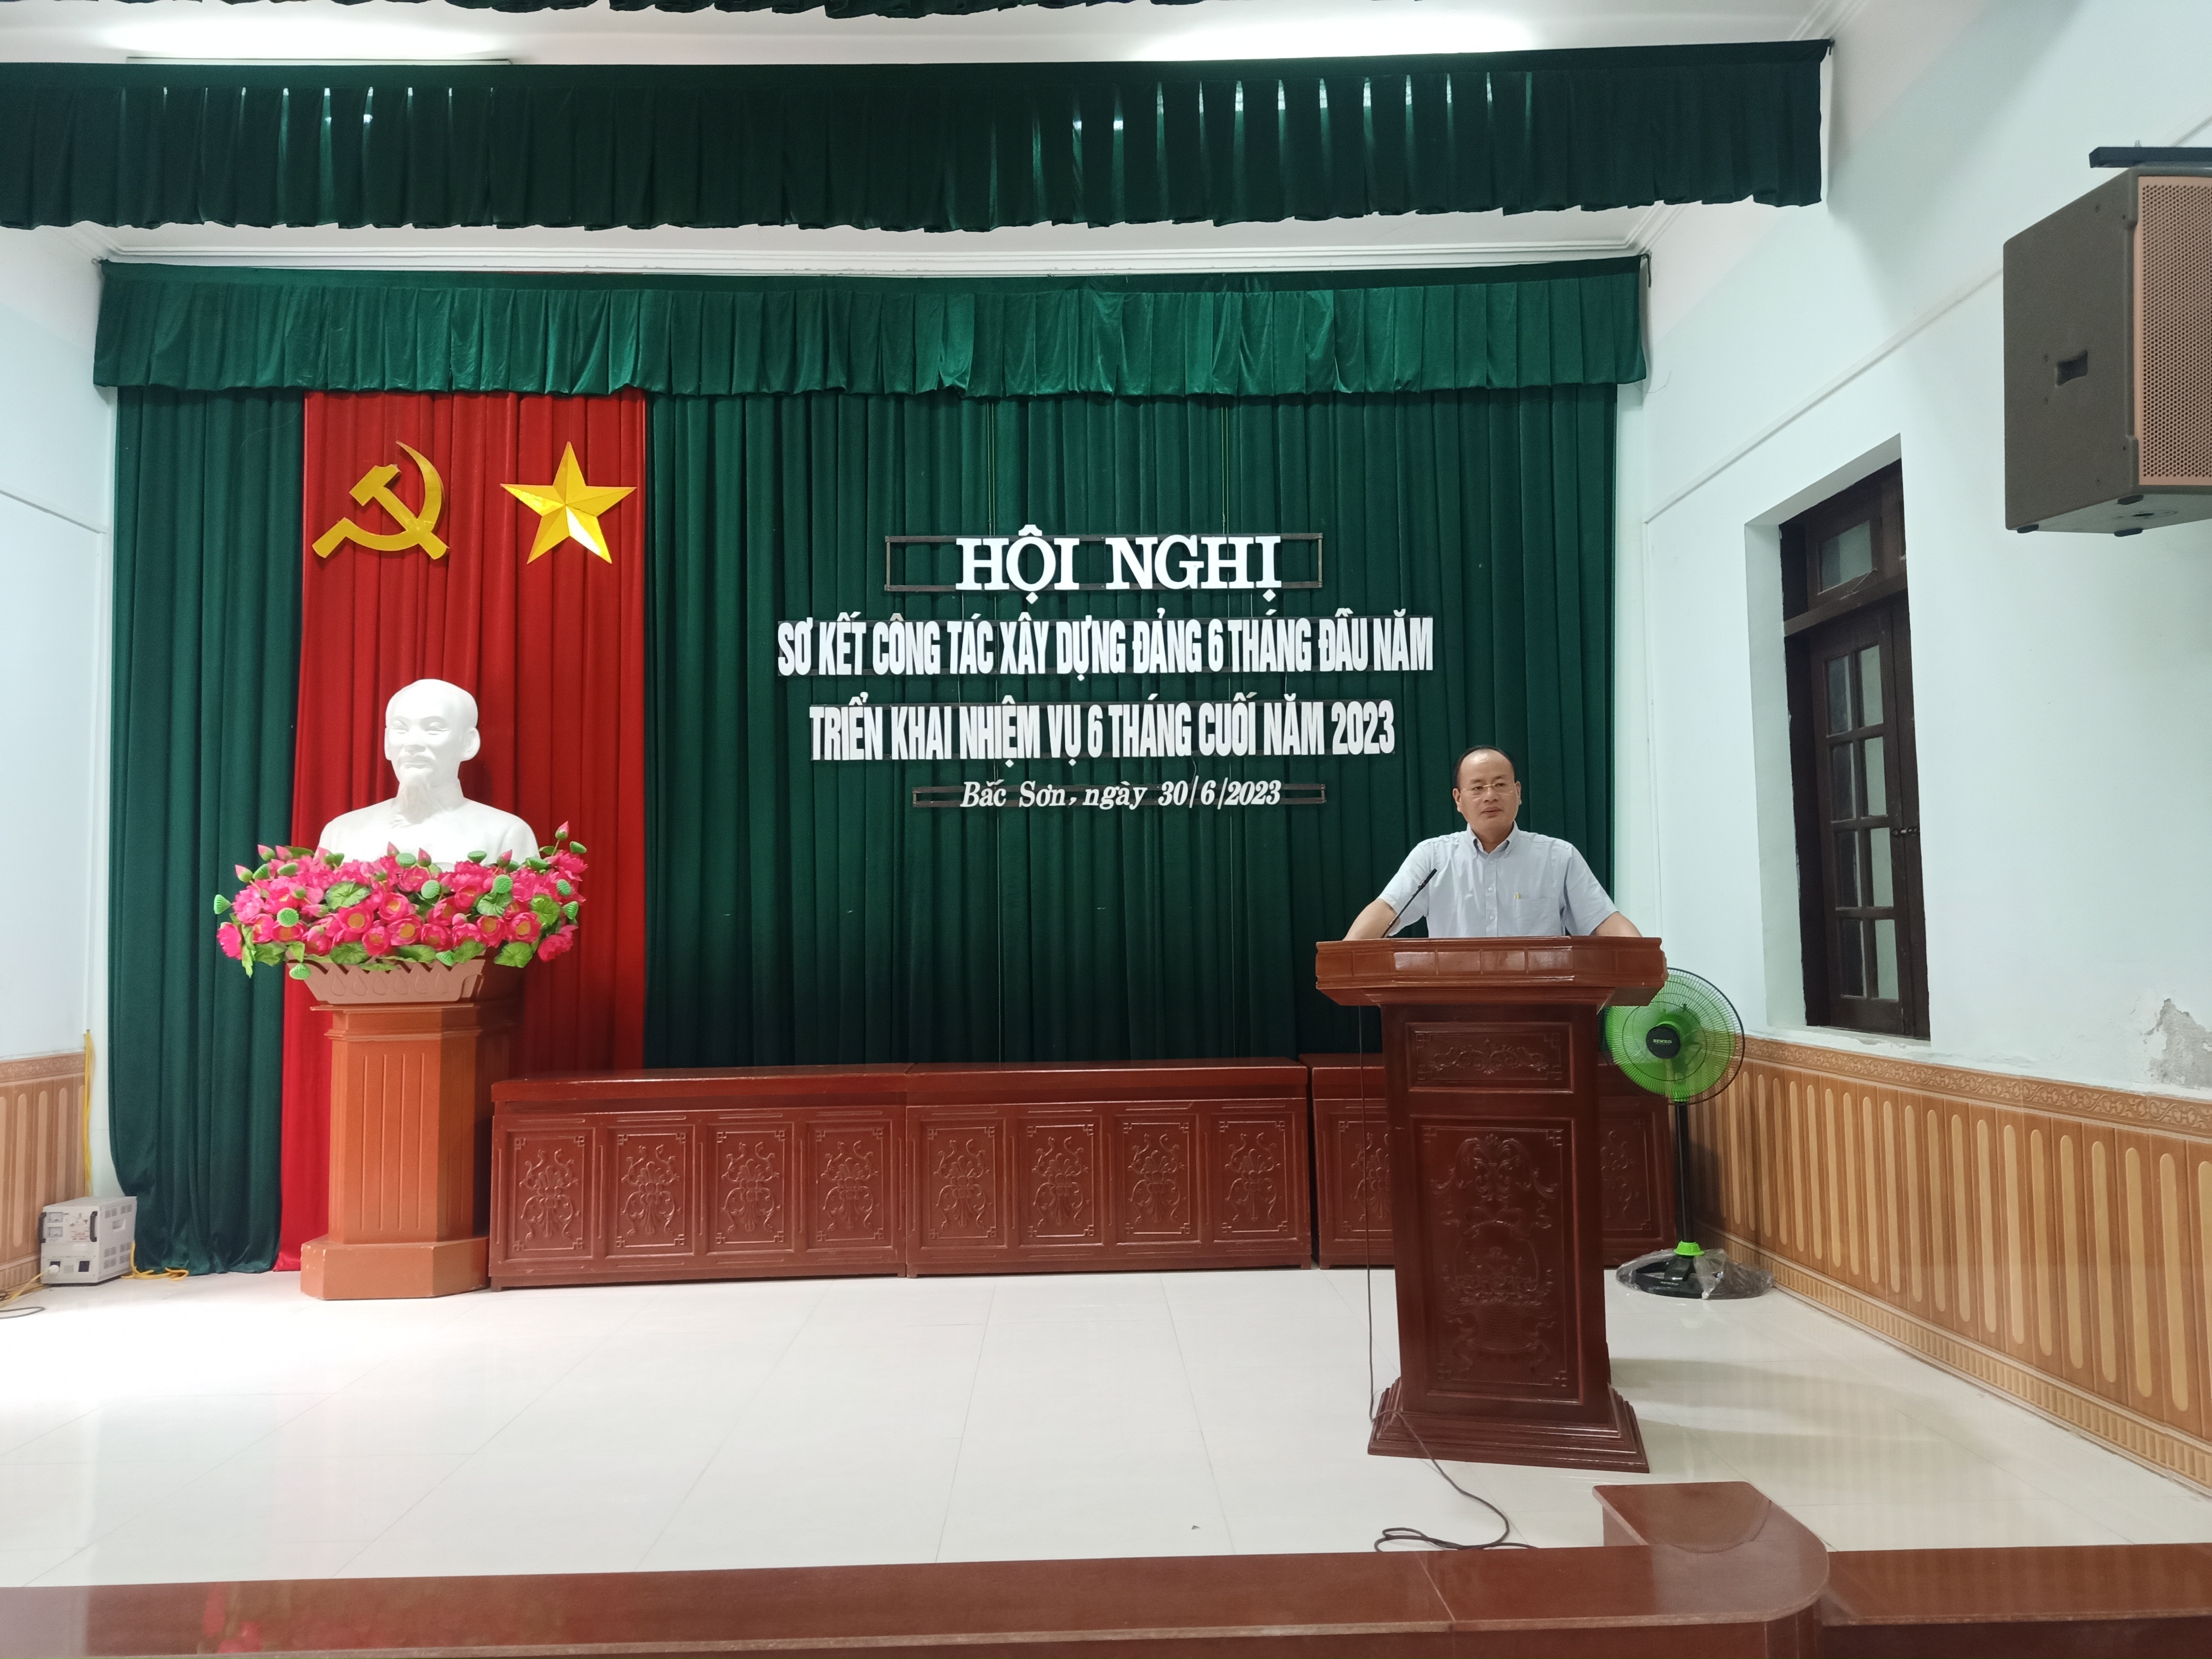 Đảng ủy phường Bắc Sơn tổ chức Hội nghị sơ kết công tác xây dựng Đảng 6 tháng đầu năm, triển khai nhiệm vụ 6 tháng cuối năm 2023